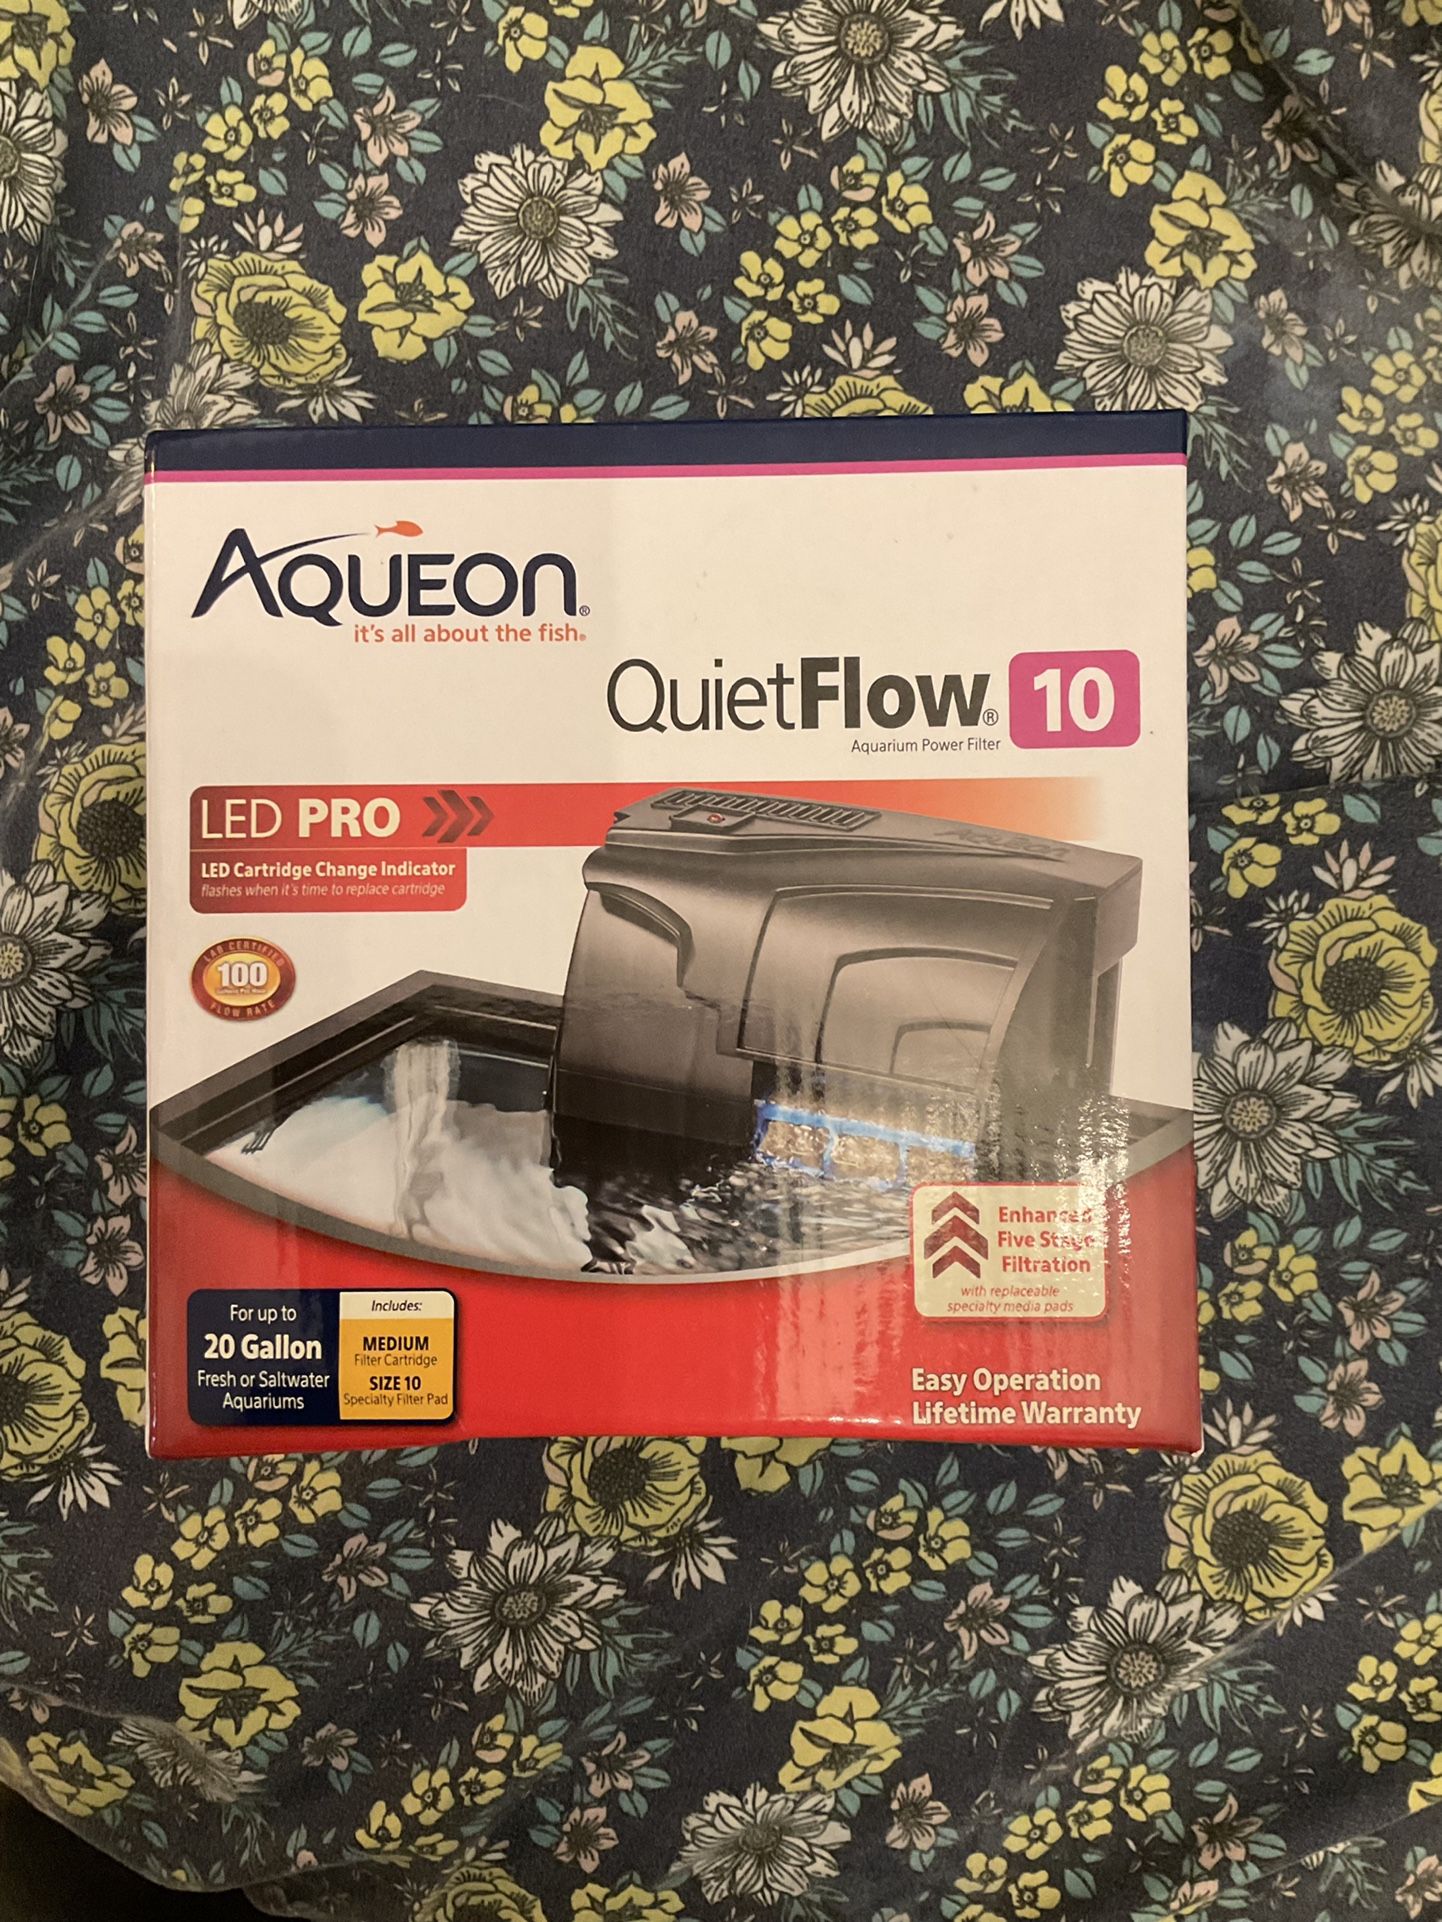 Aqueon Quite Flow 10